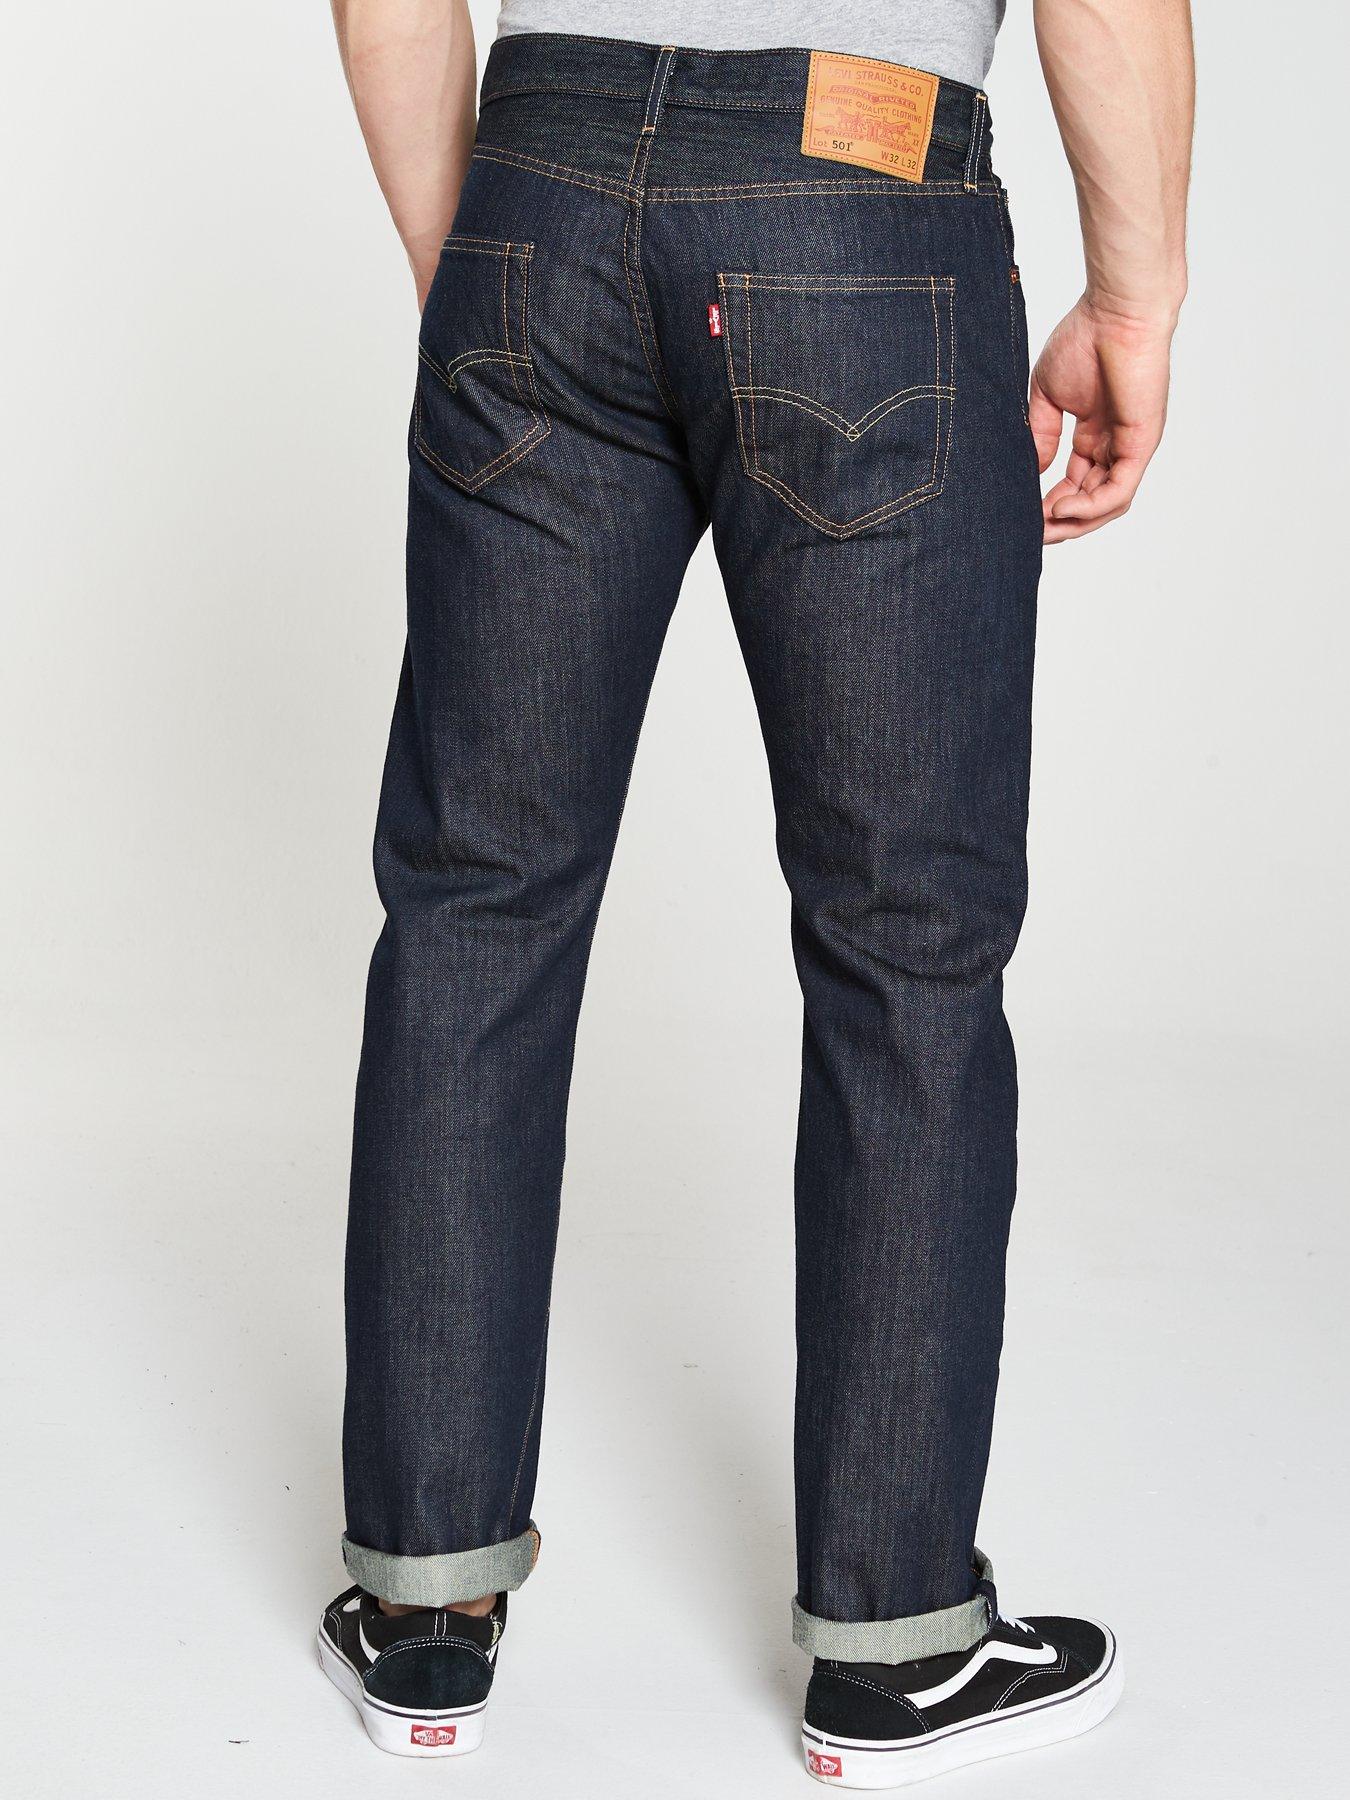 levis marlon jeans